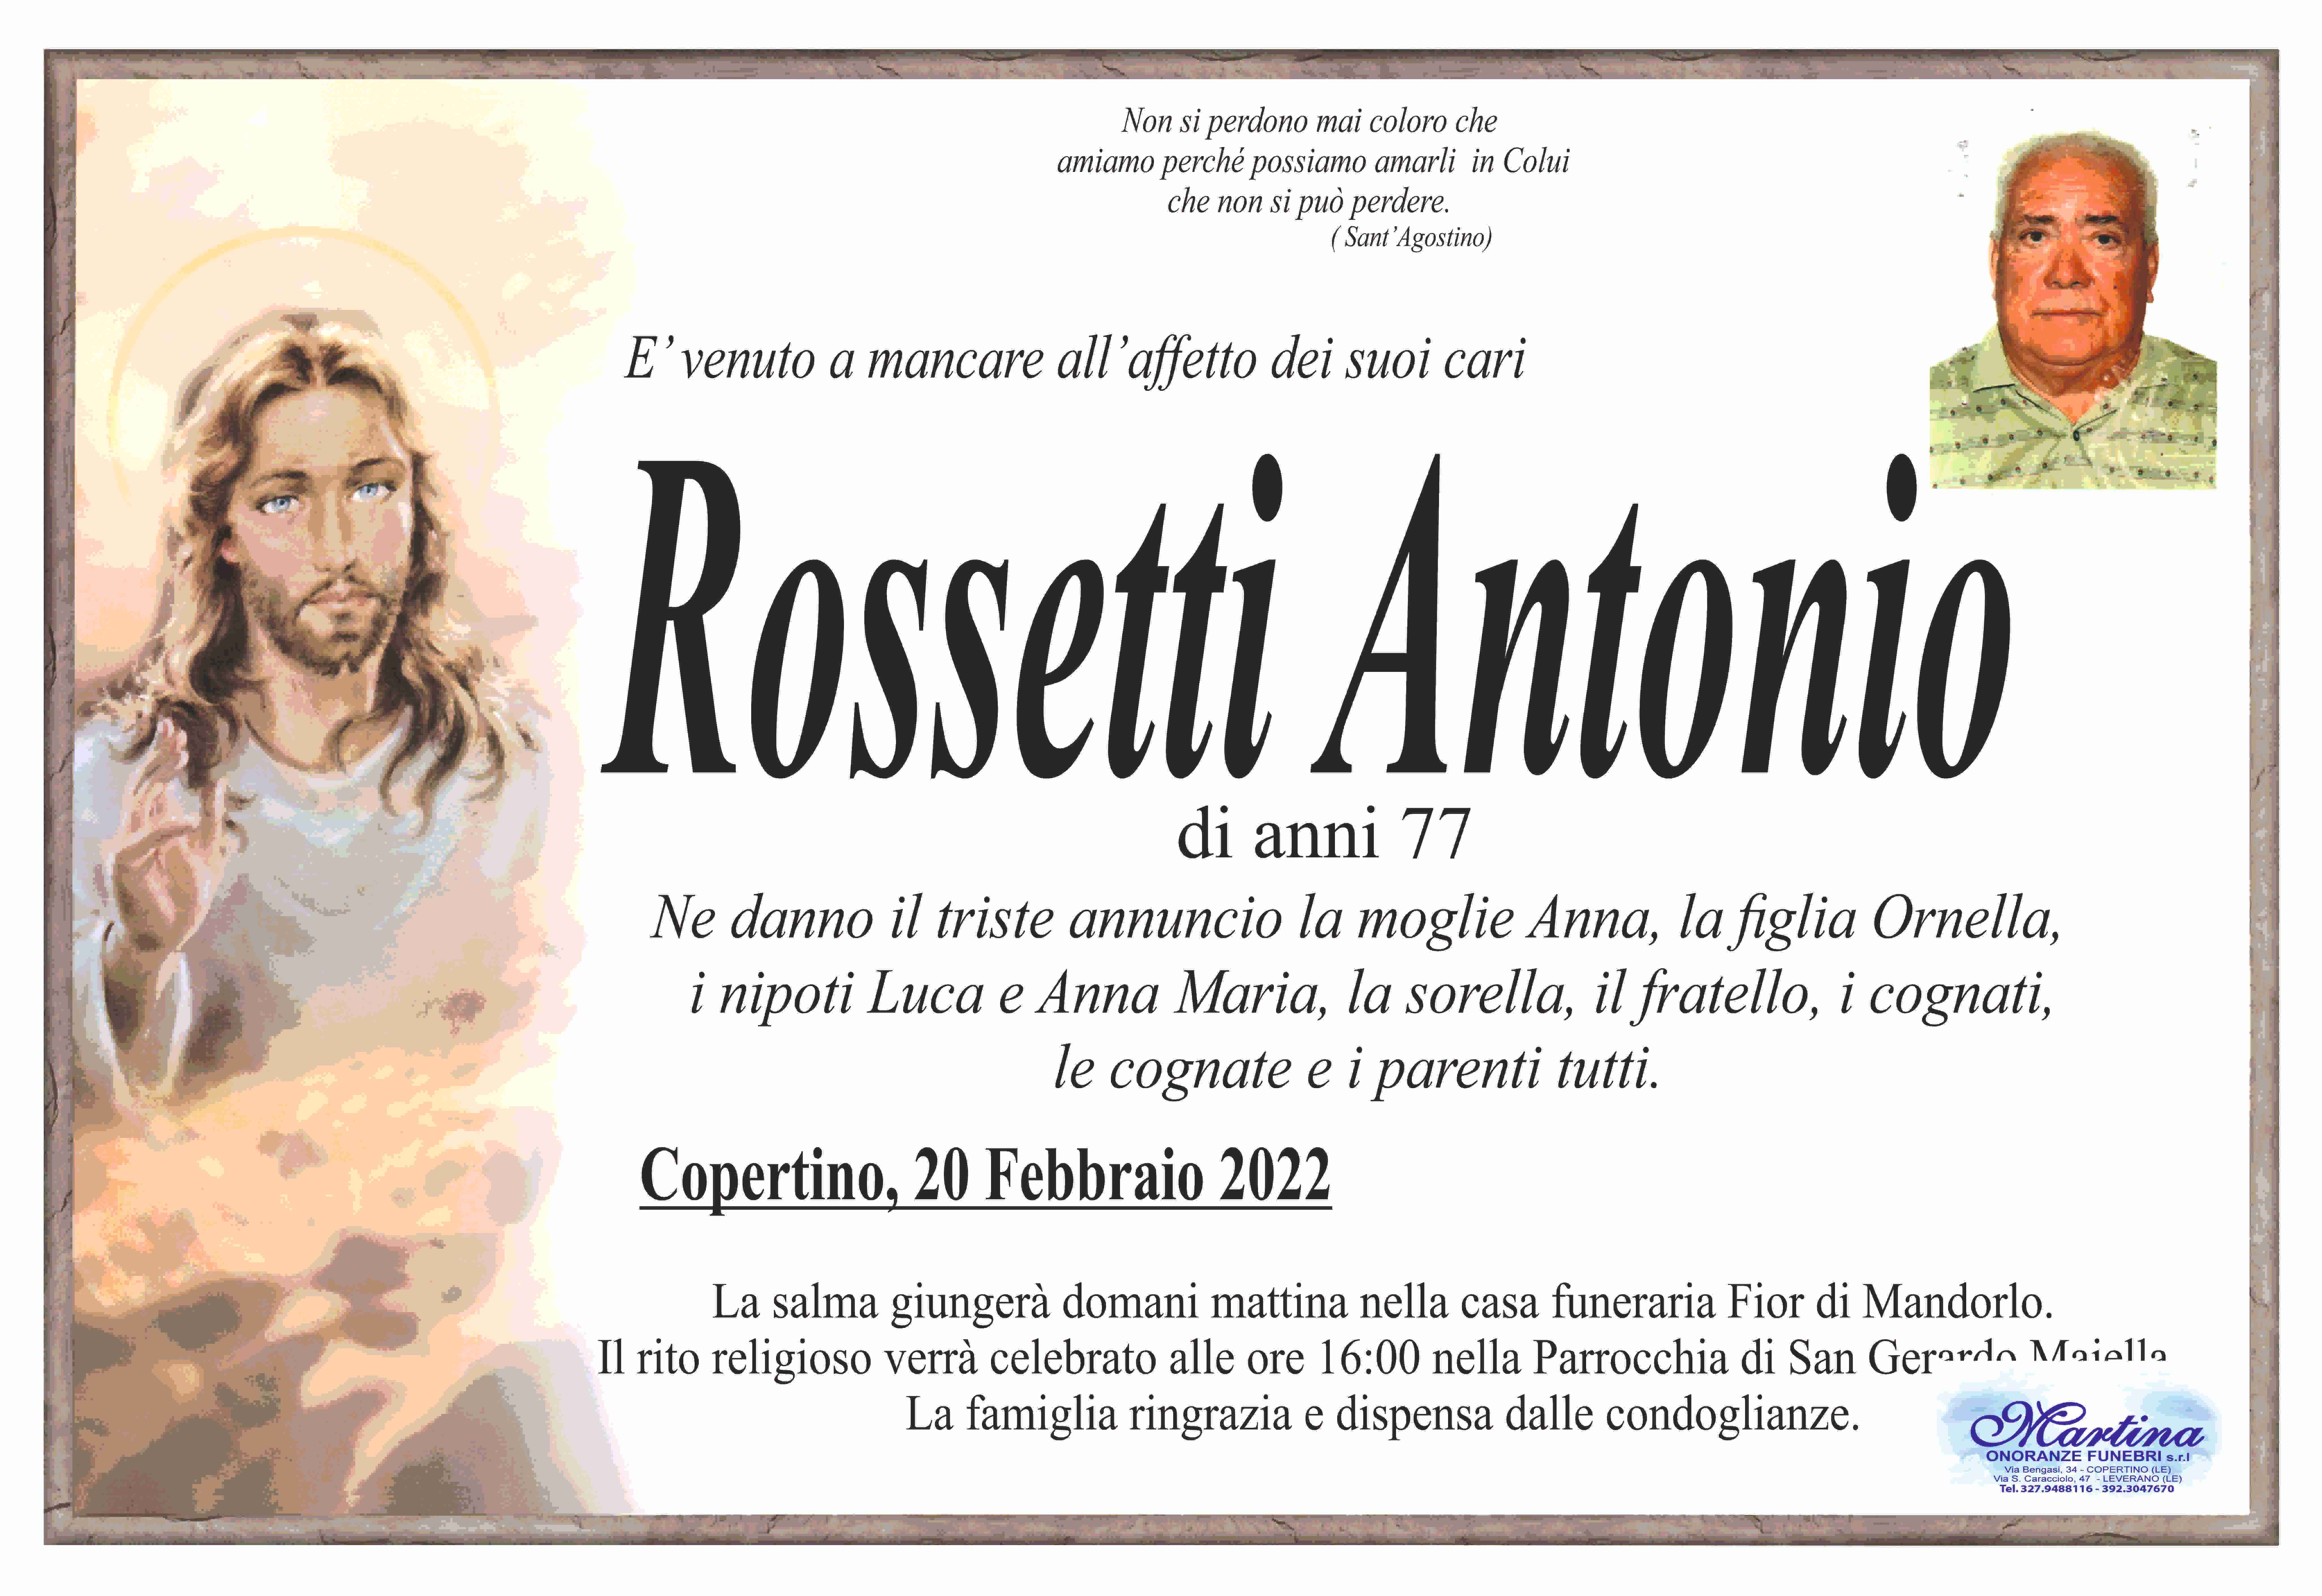 Antonio Rossetti